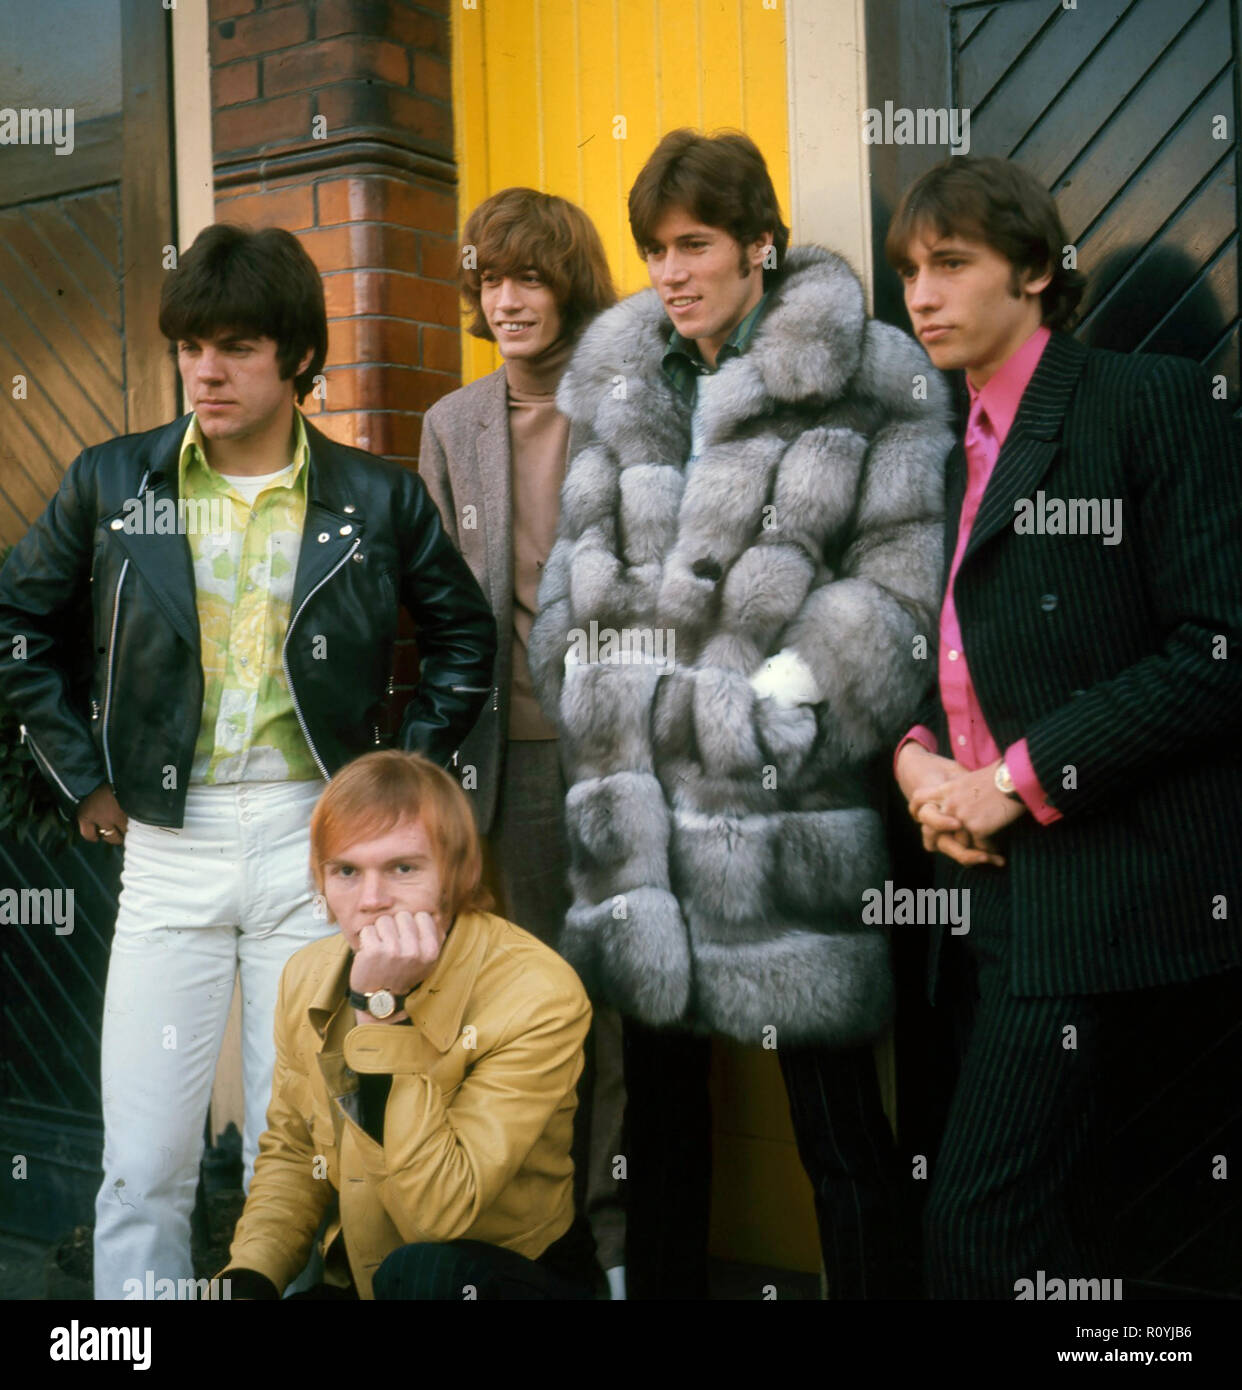 BEE GEES groupe pop britannique en 1968. De gauche à droite : Vince Melouney, Robin Gibb, Colin Peterson (à genoux) Barry Gibb, Maurice Gibb. Photo : Tony Gale Banque D'Images